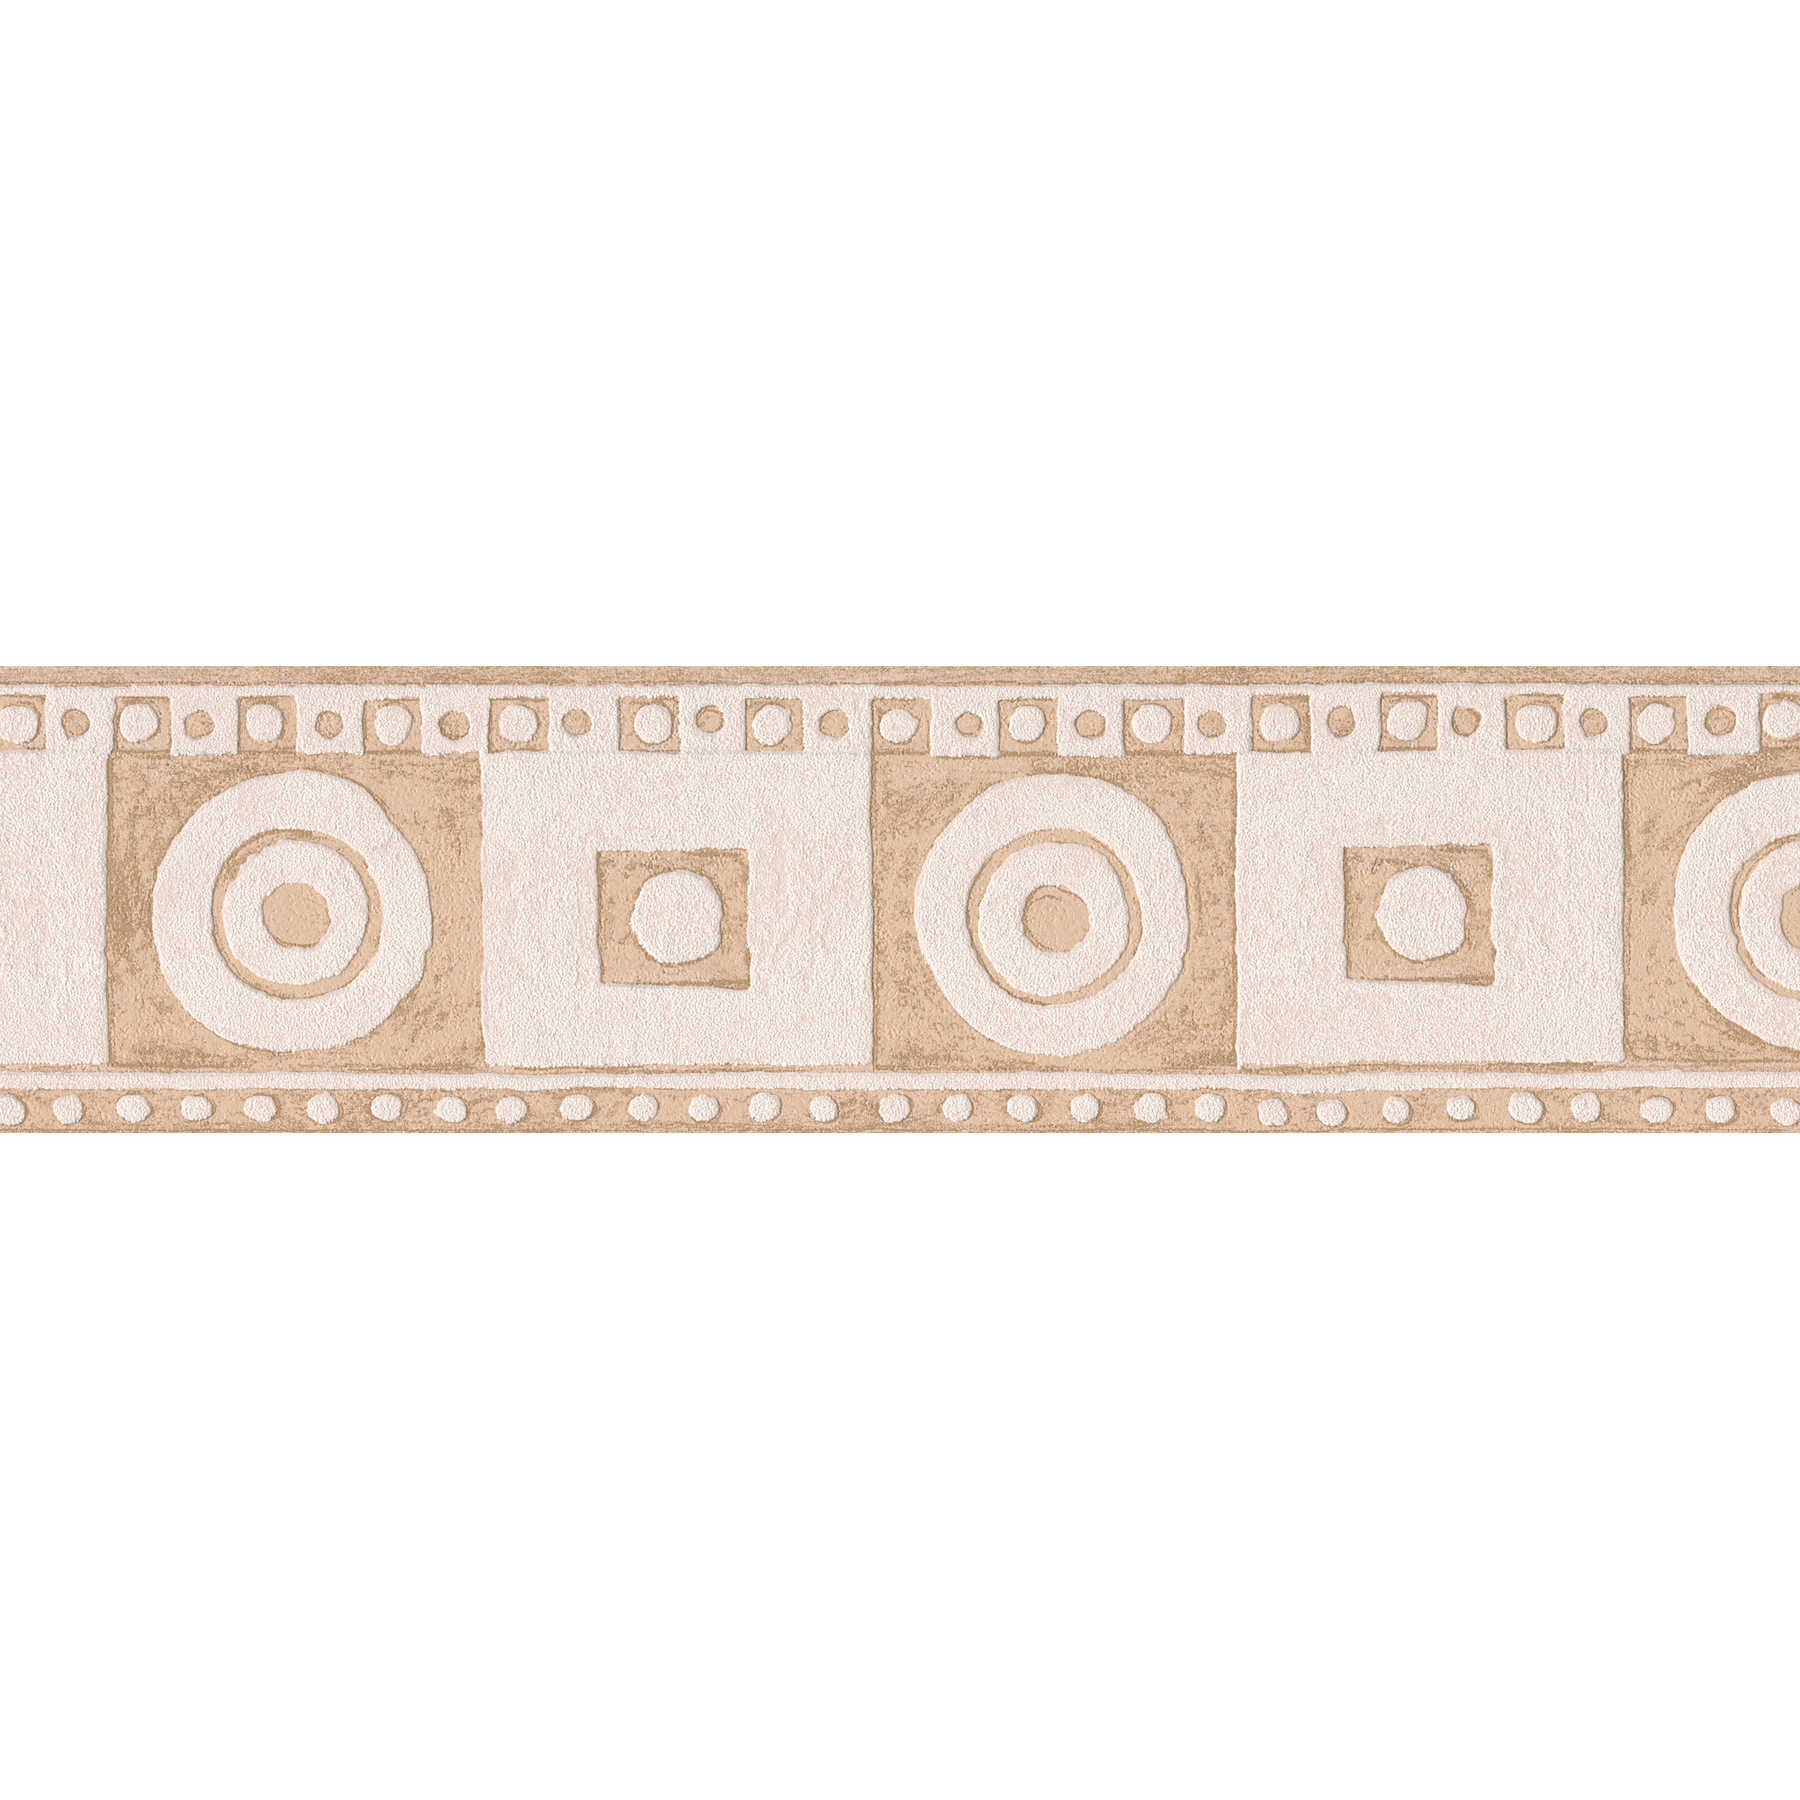 Bordure Graphique Motif Style Méditerranéen - Beige, Crème
